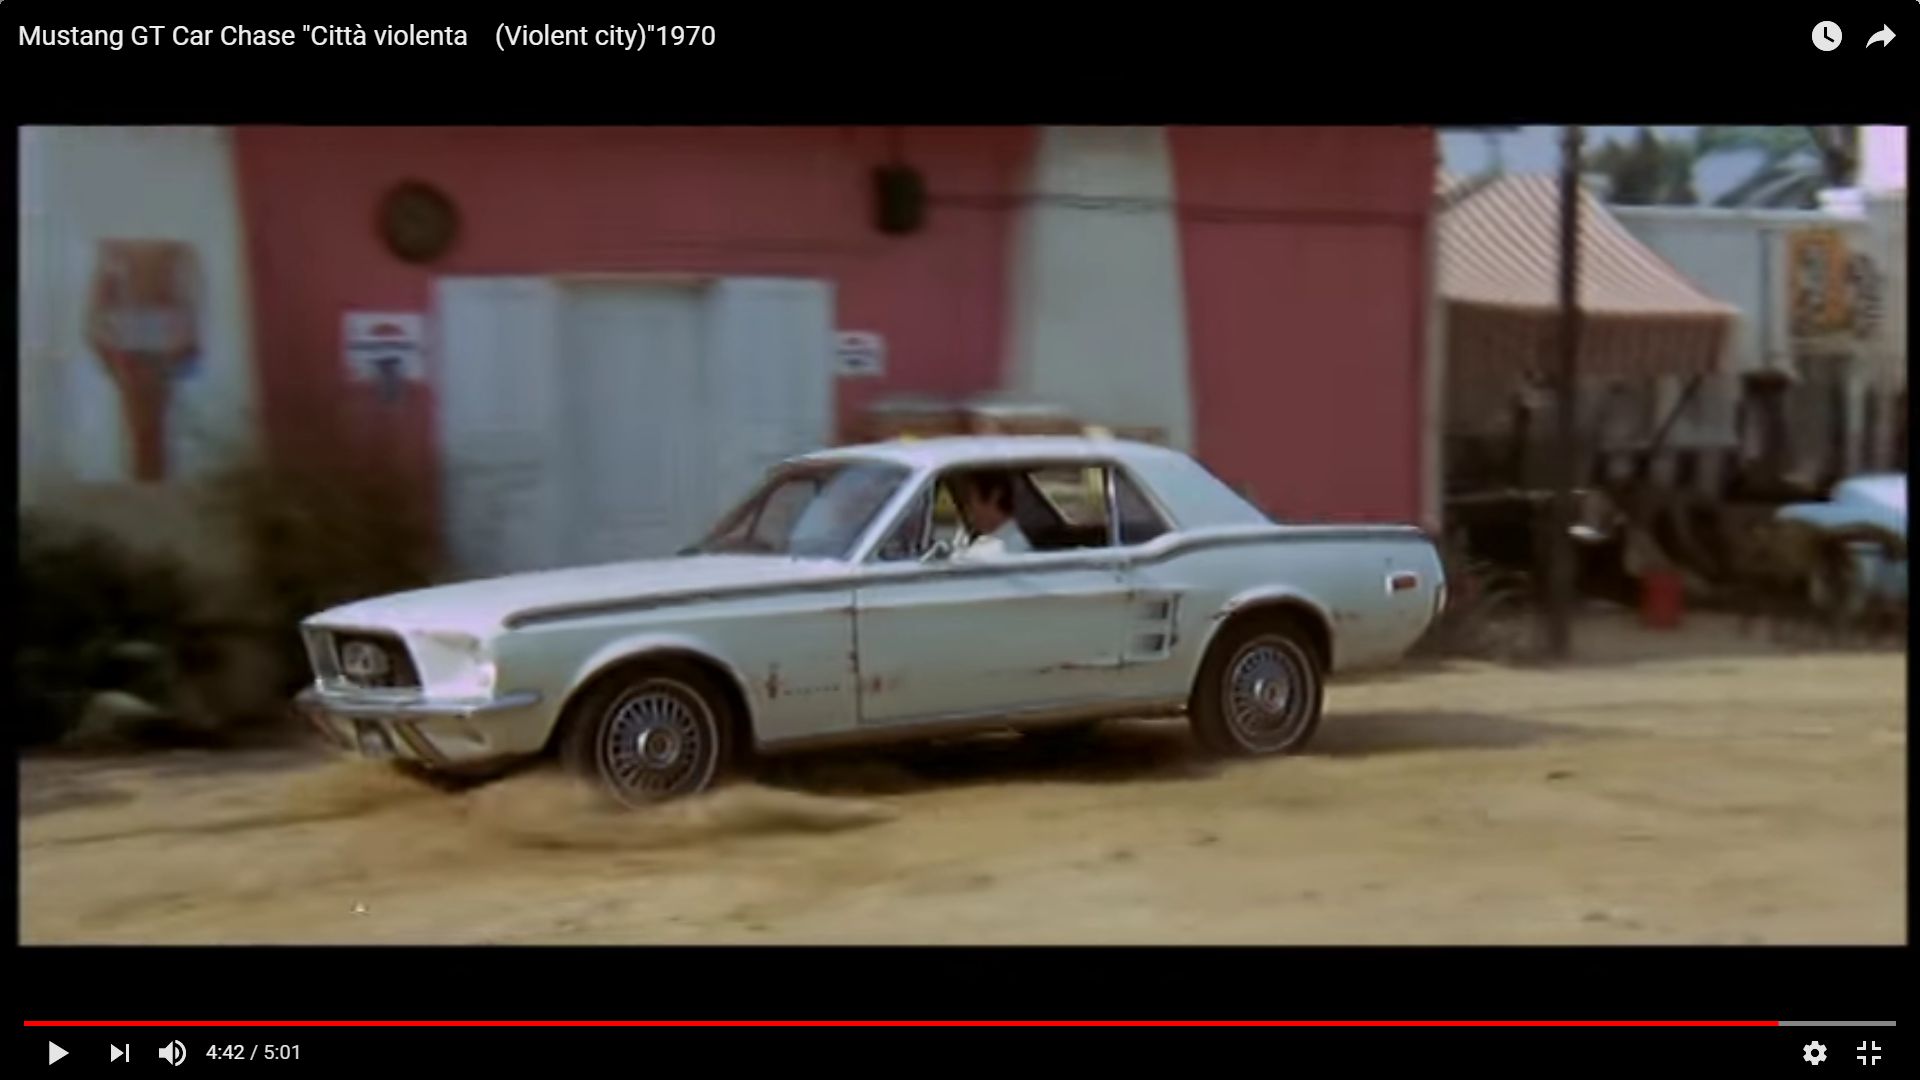 Mustang GT Car Chase, film la cité de la violence Nouve134